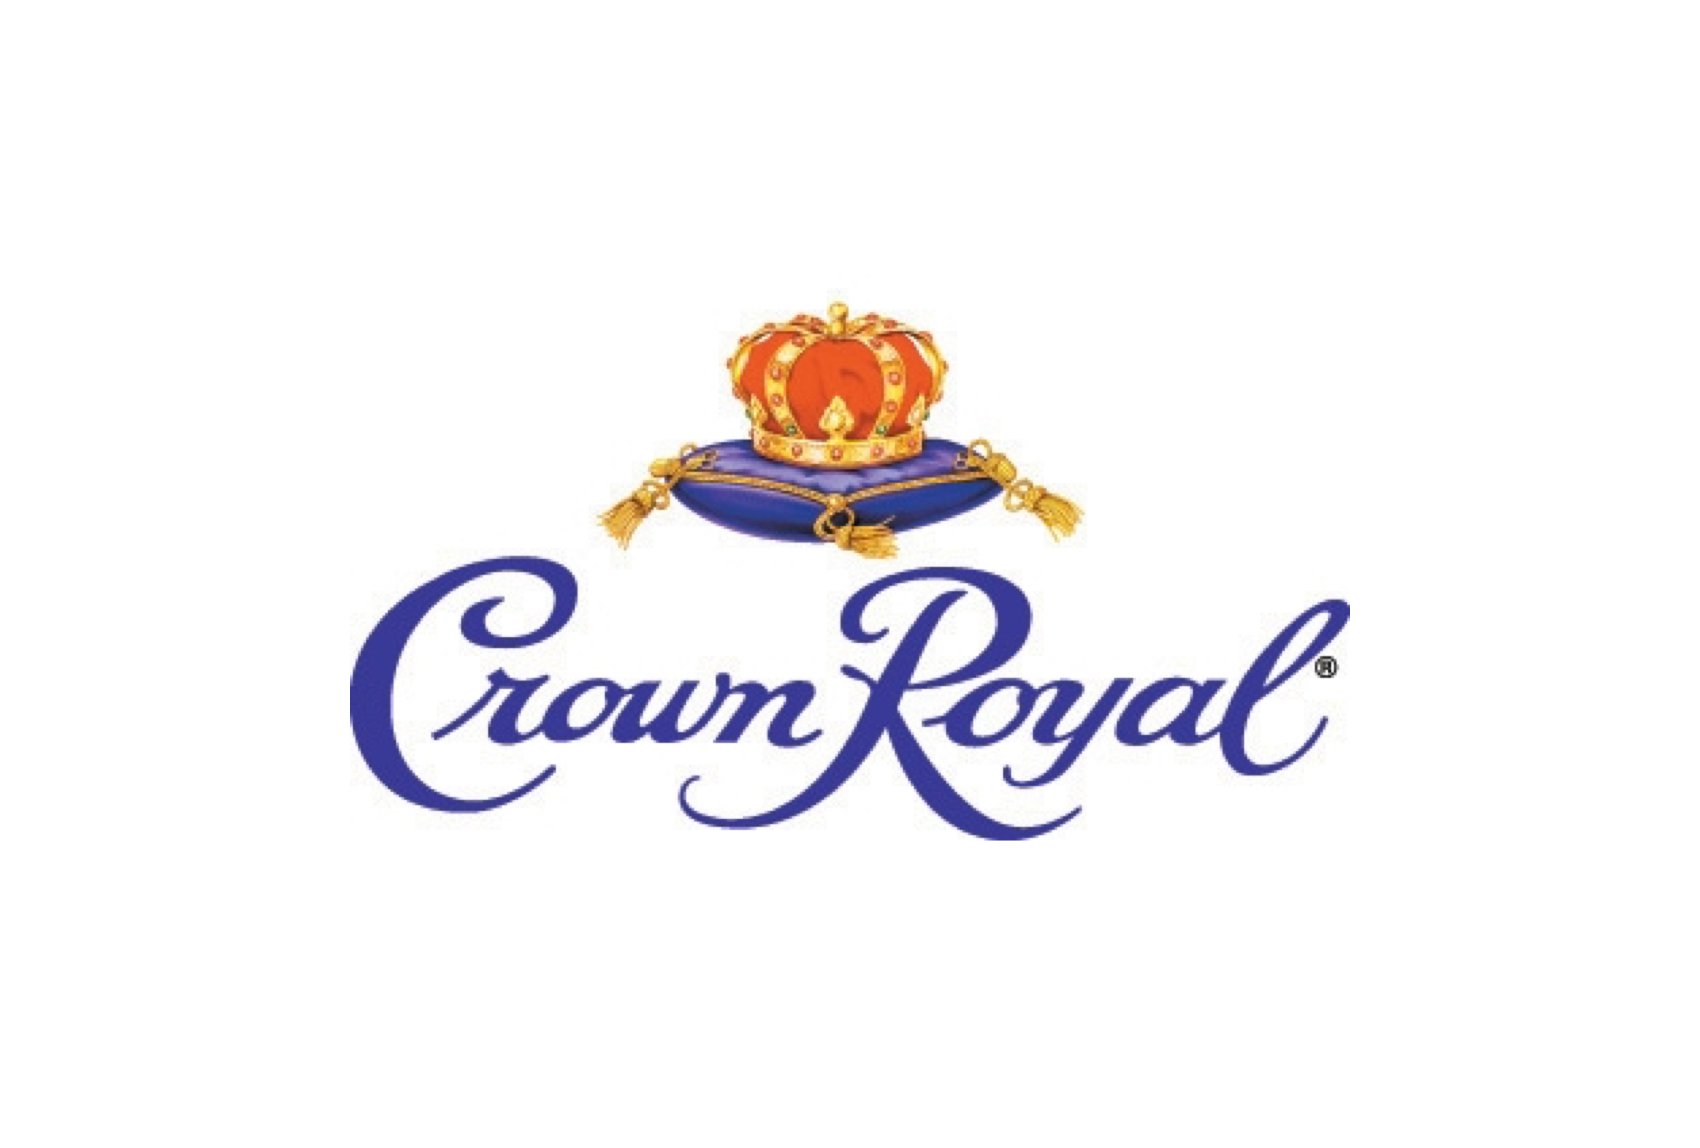 purple-logo-crown-royal